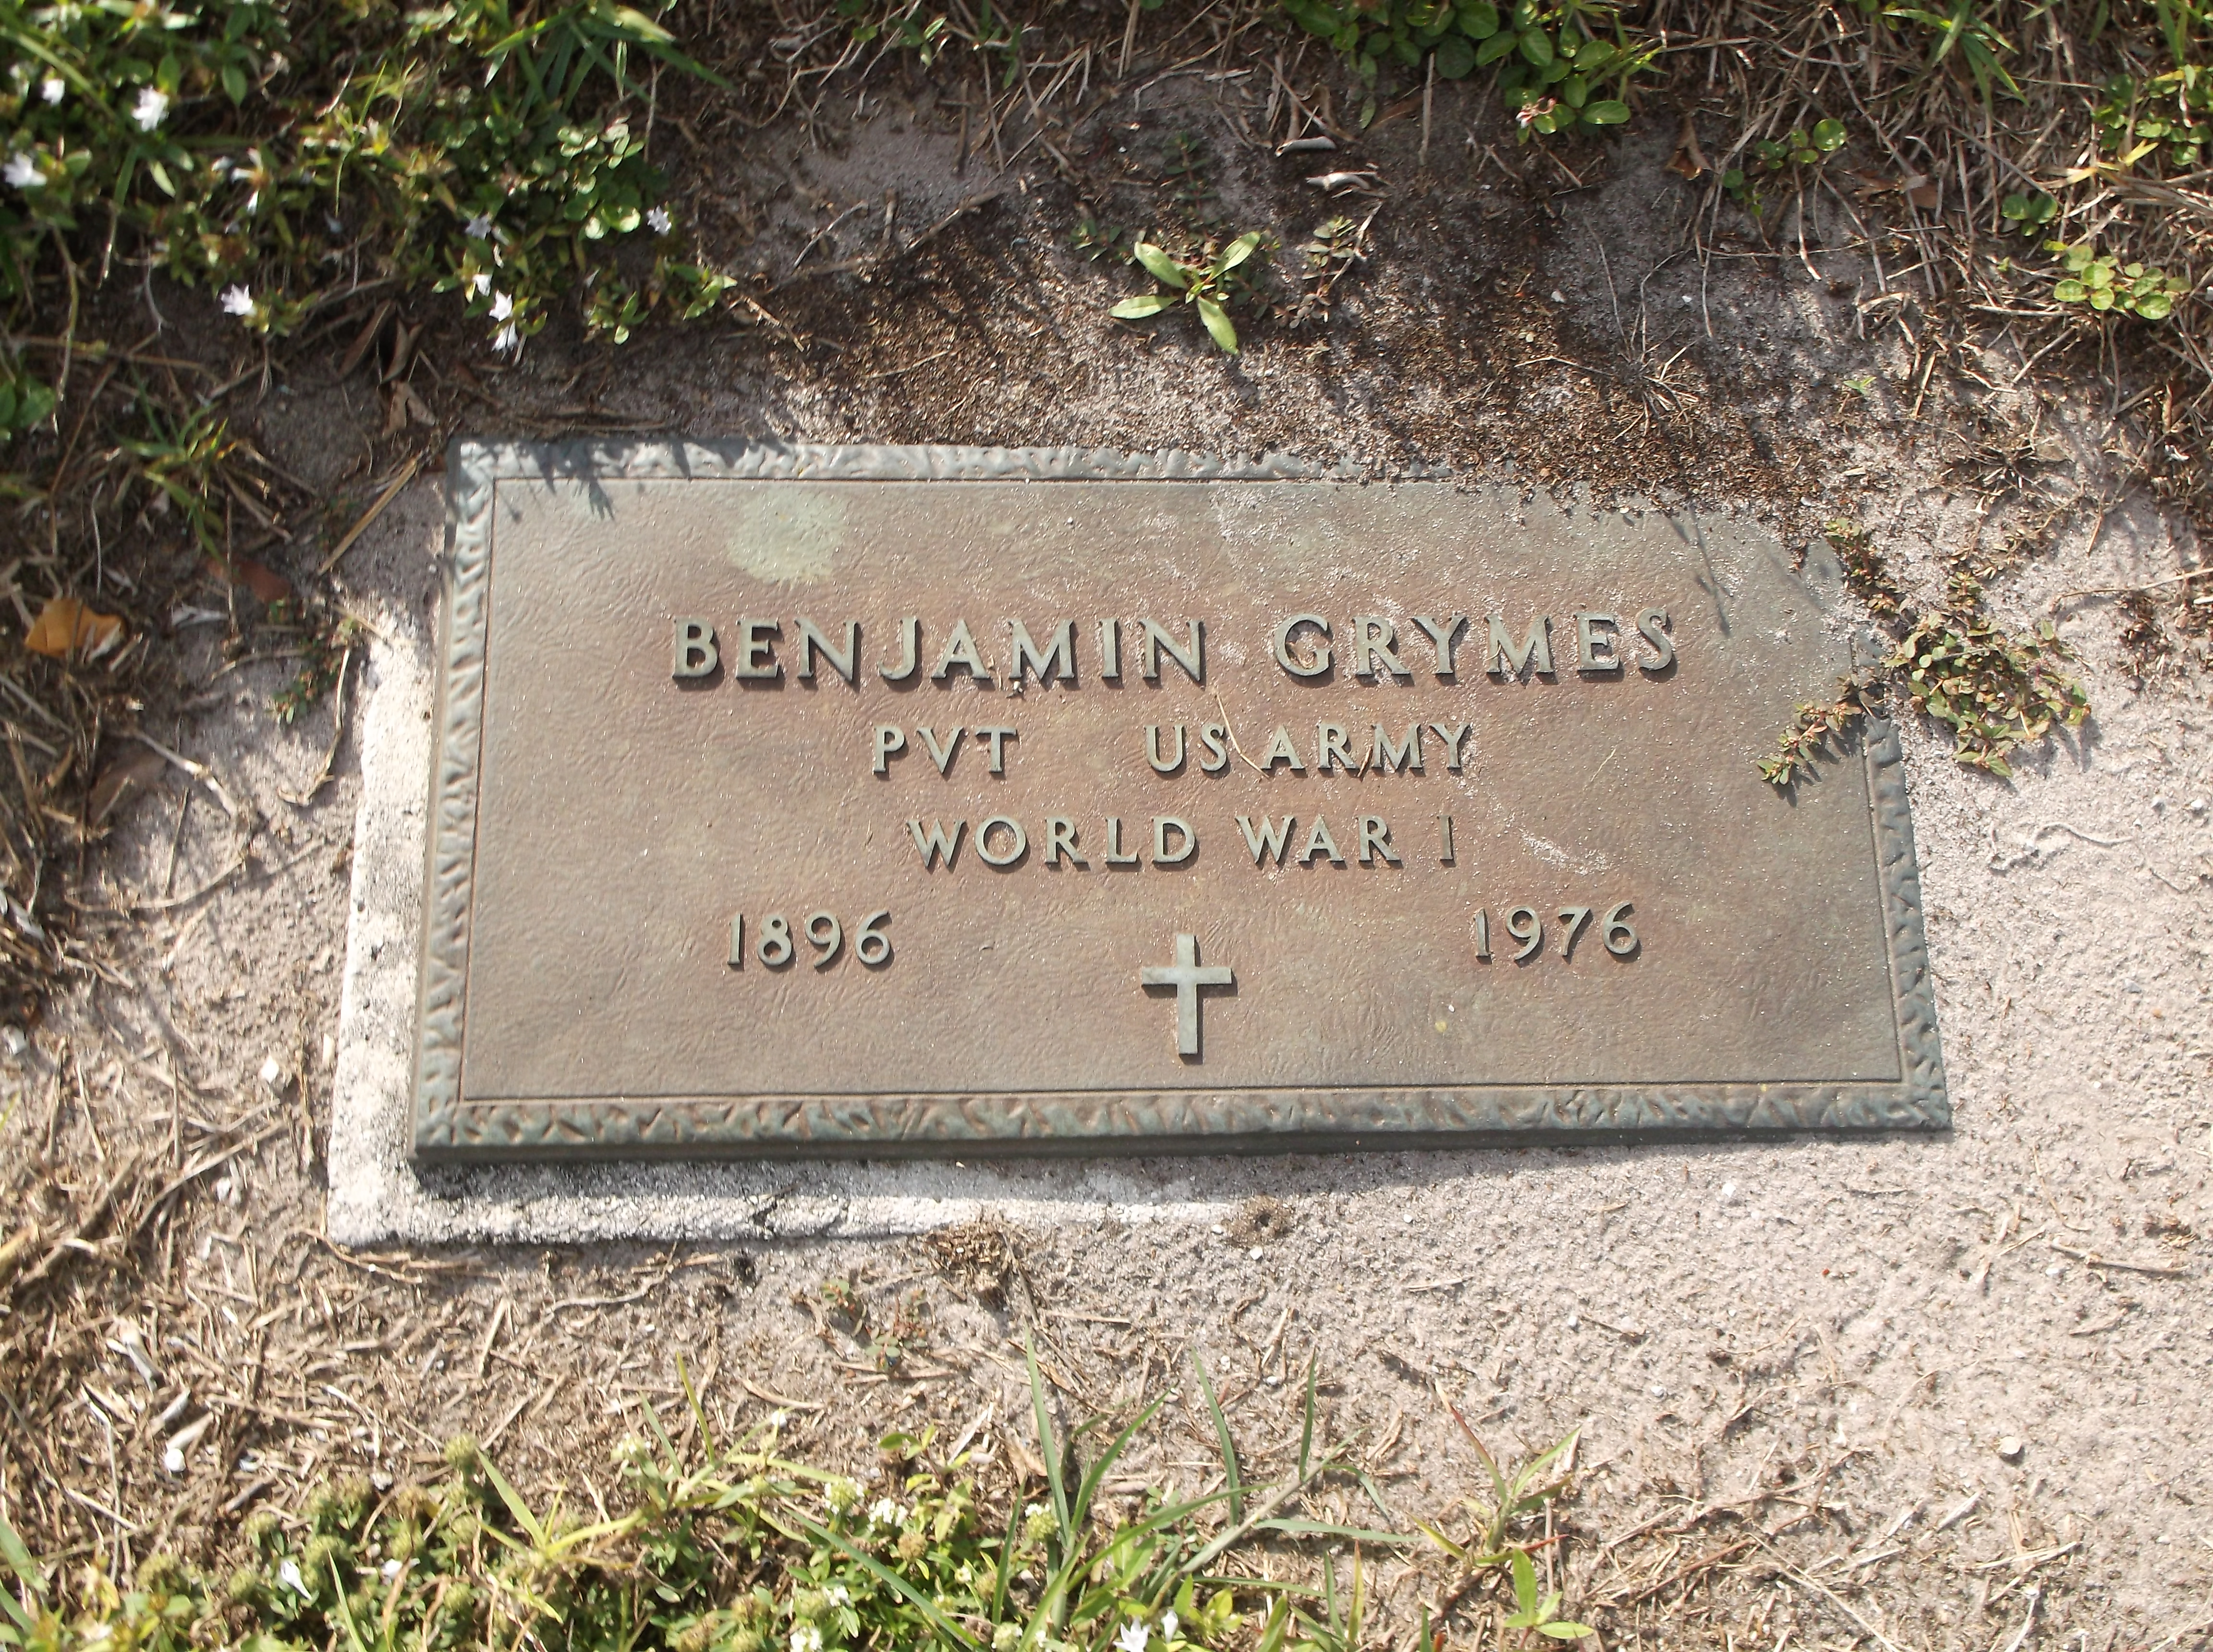 Benjamin Grymes